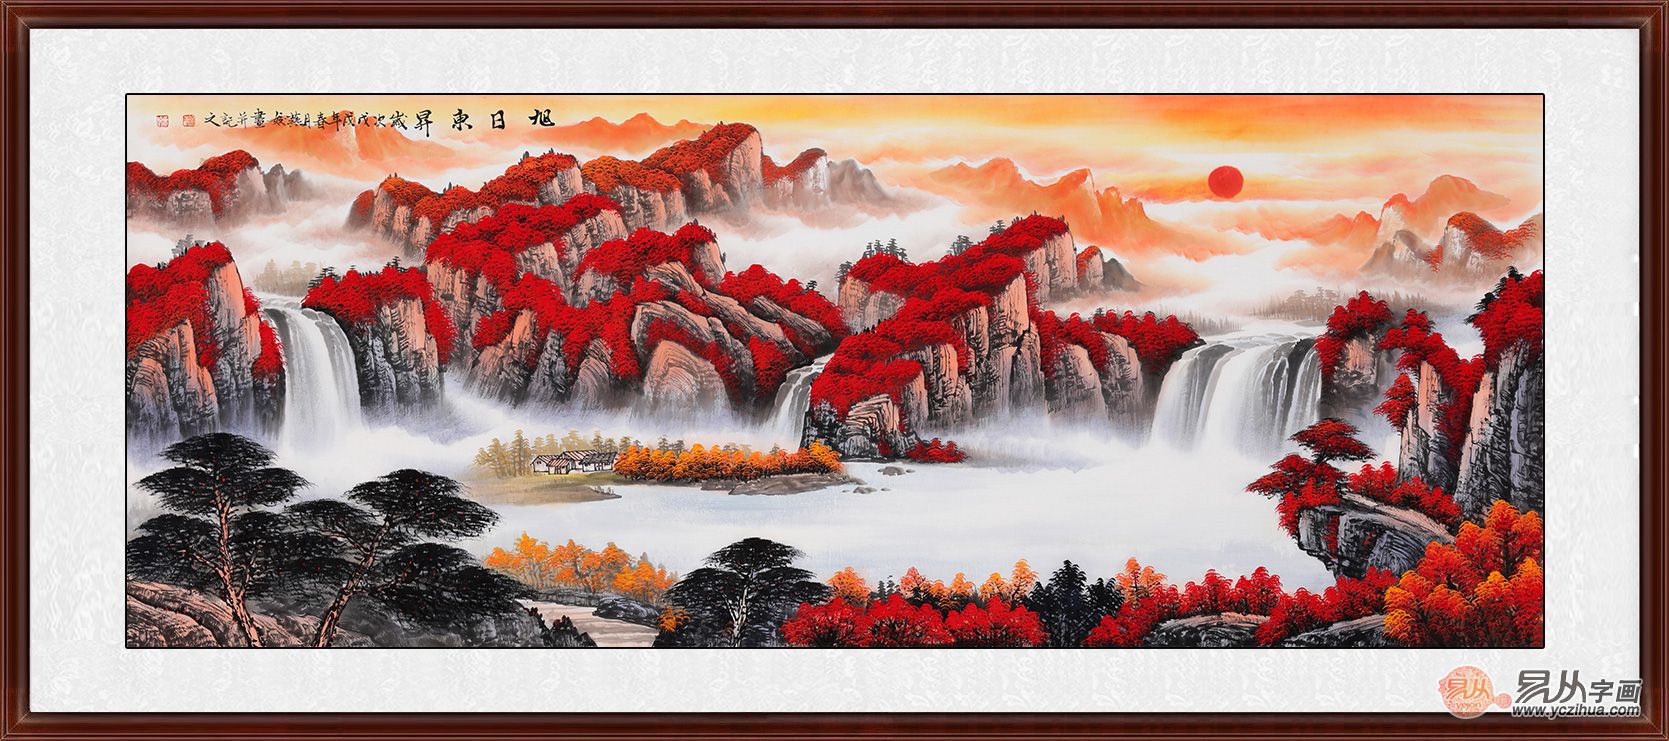 鸿运图刘燕姣六尺山水画作品《旭日东升》来源:易从网刘燕姣的这幅